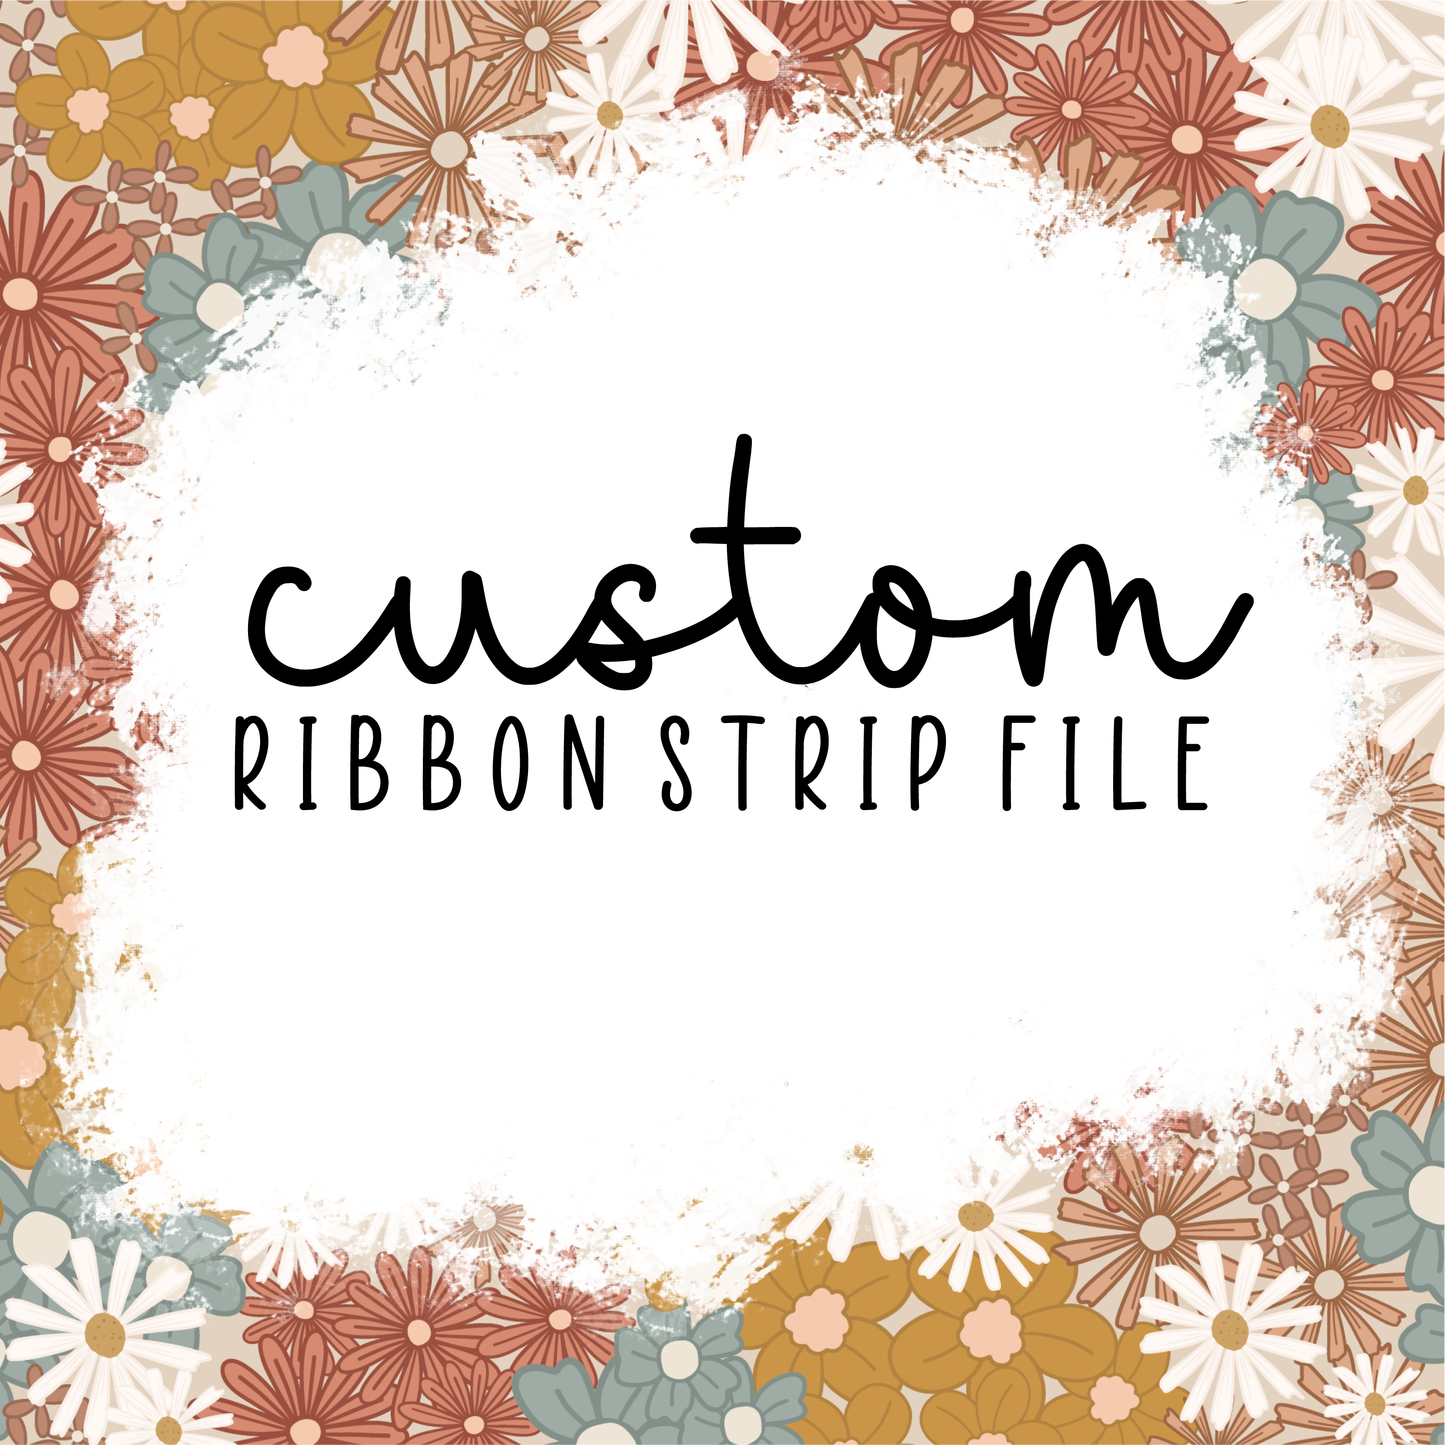 Custom Ribbon Strip